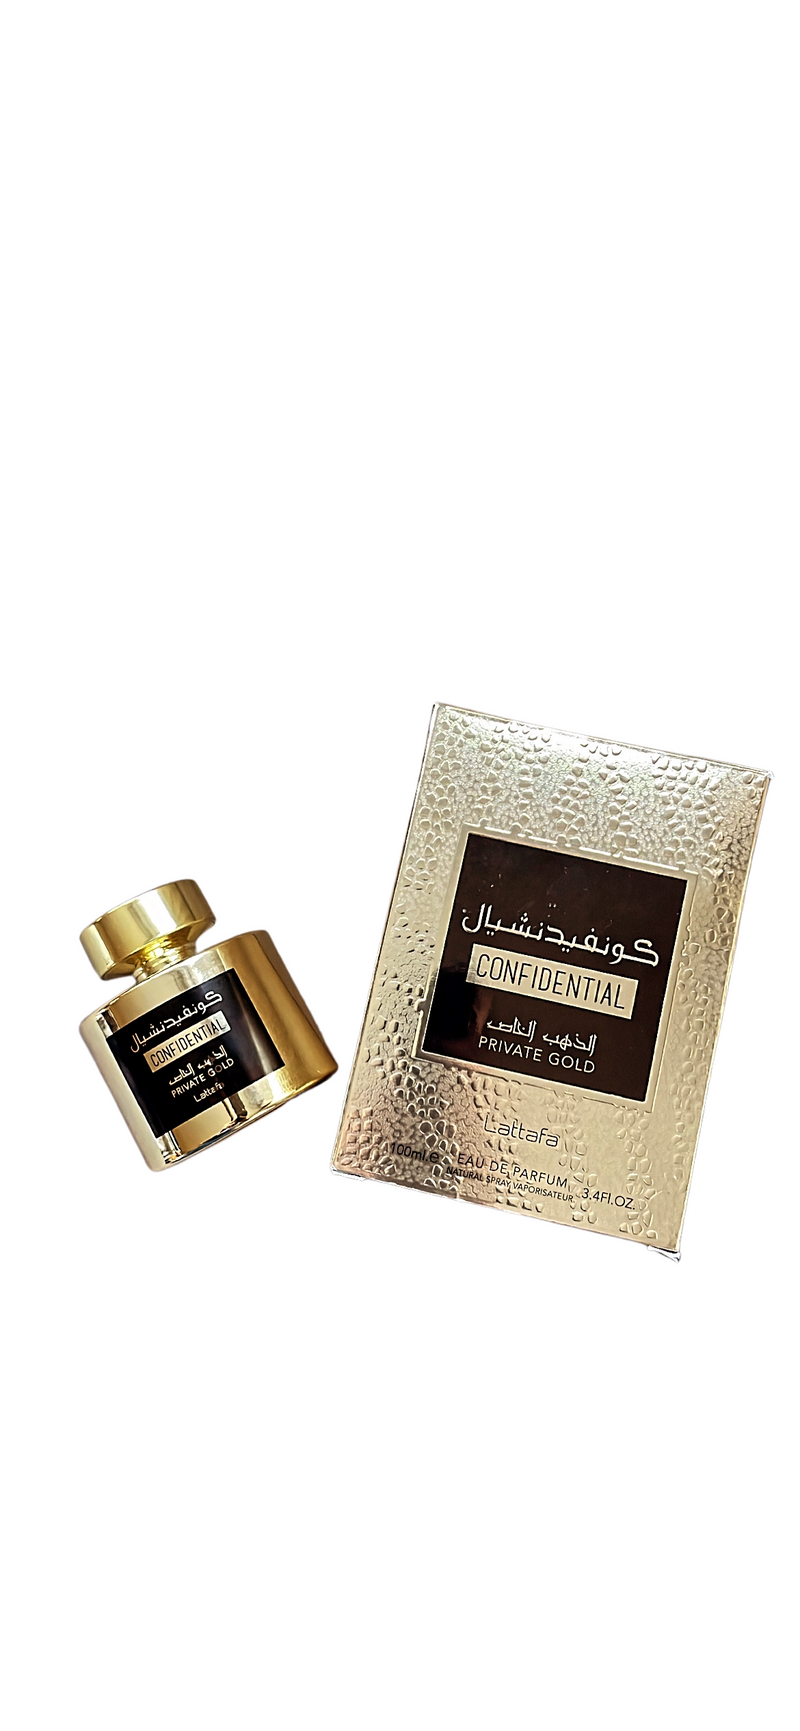 Confidential - Lattafa - Eau de parfum - 100/100ml